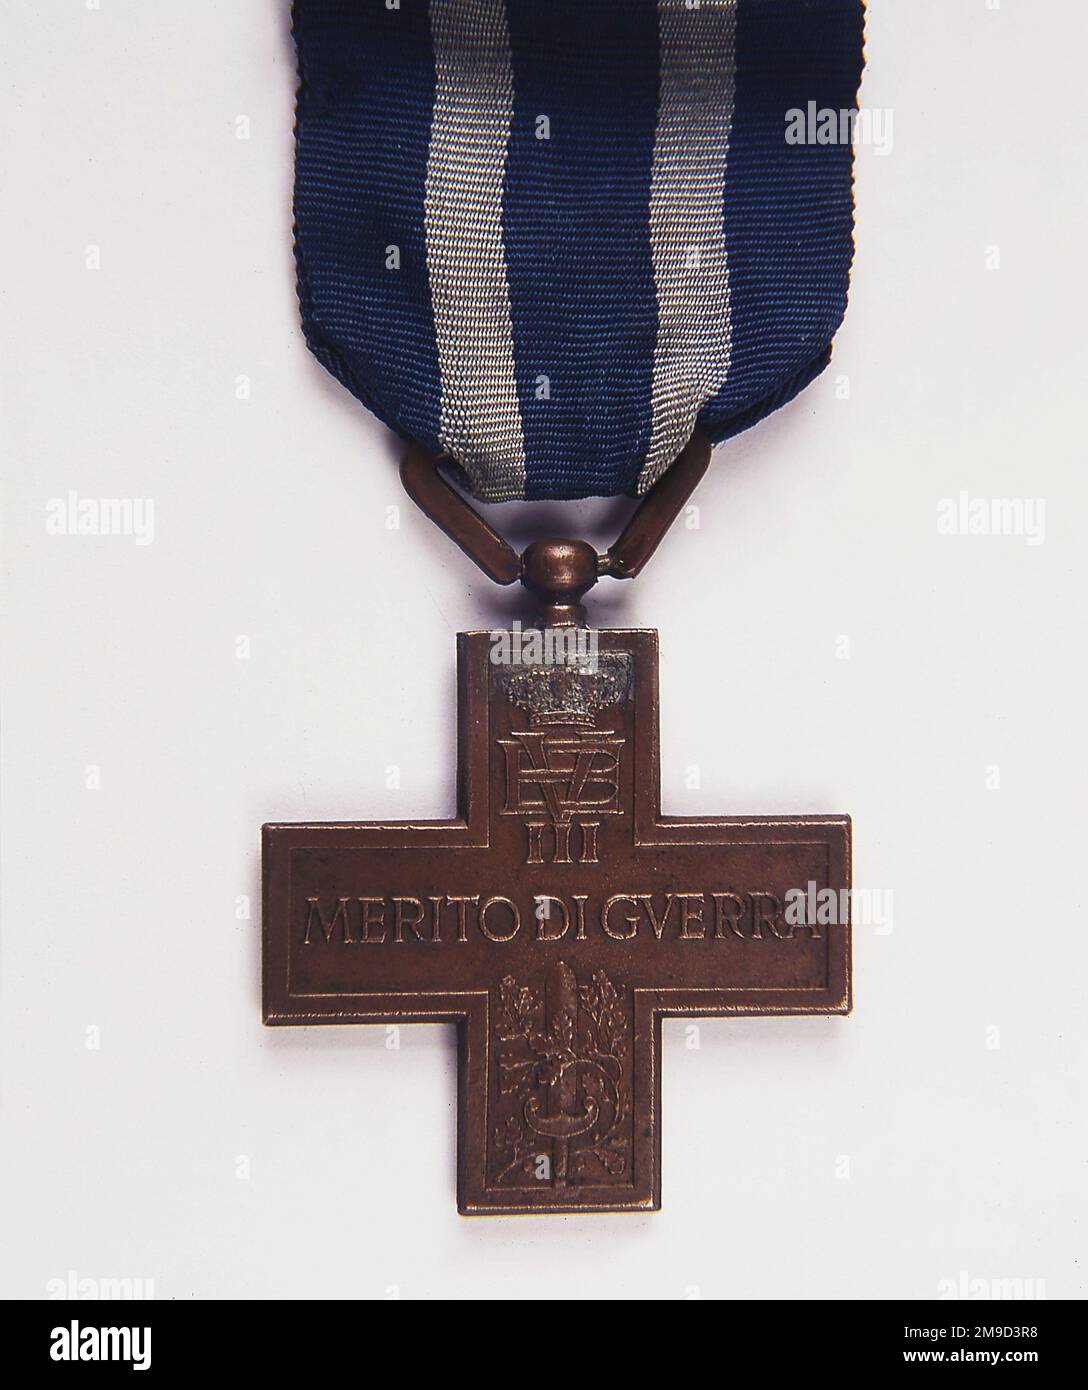 Merito di Guerra, italienisches Verdienstkreuz, Bronzemedaille, die während des Ersten Weltkriegs eingeführt wurde und ebenfalls während des Zweiten Weltkriegs verliehen wurde, mit dem Wappen von Victor Emmanuel III (1869-1947), König von Italien, über Schwert und Eichenblättern. Stockfoto